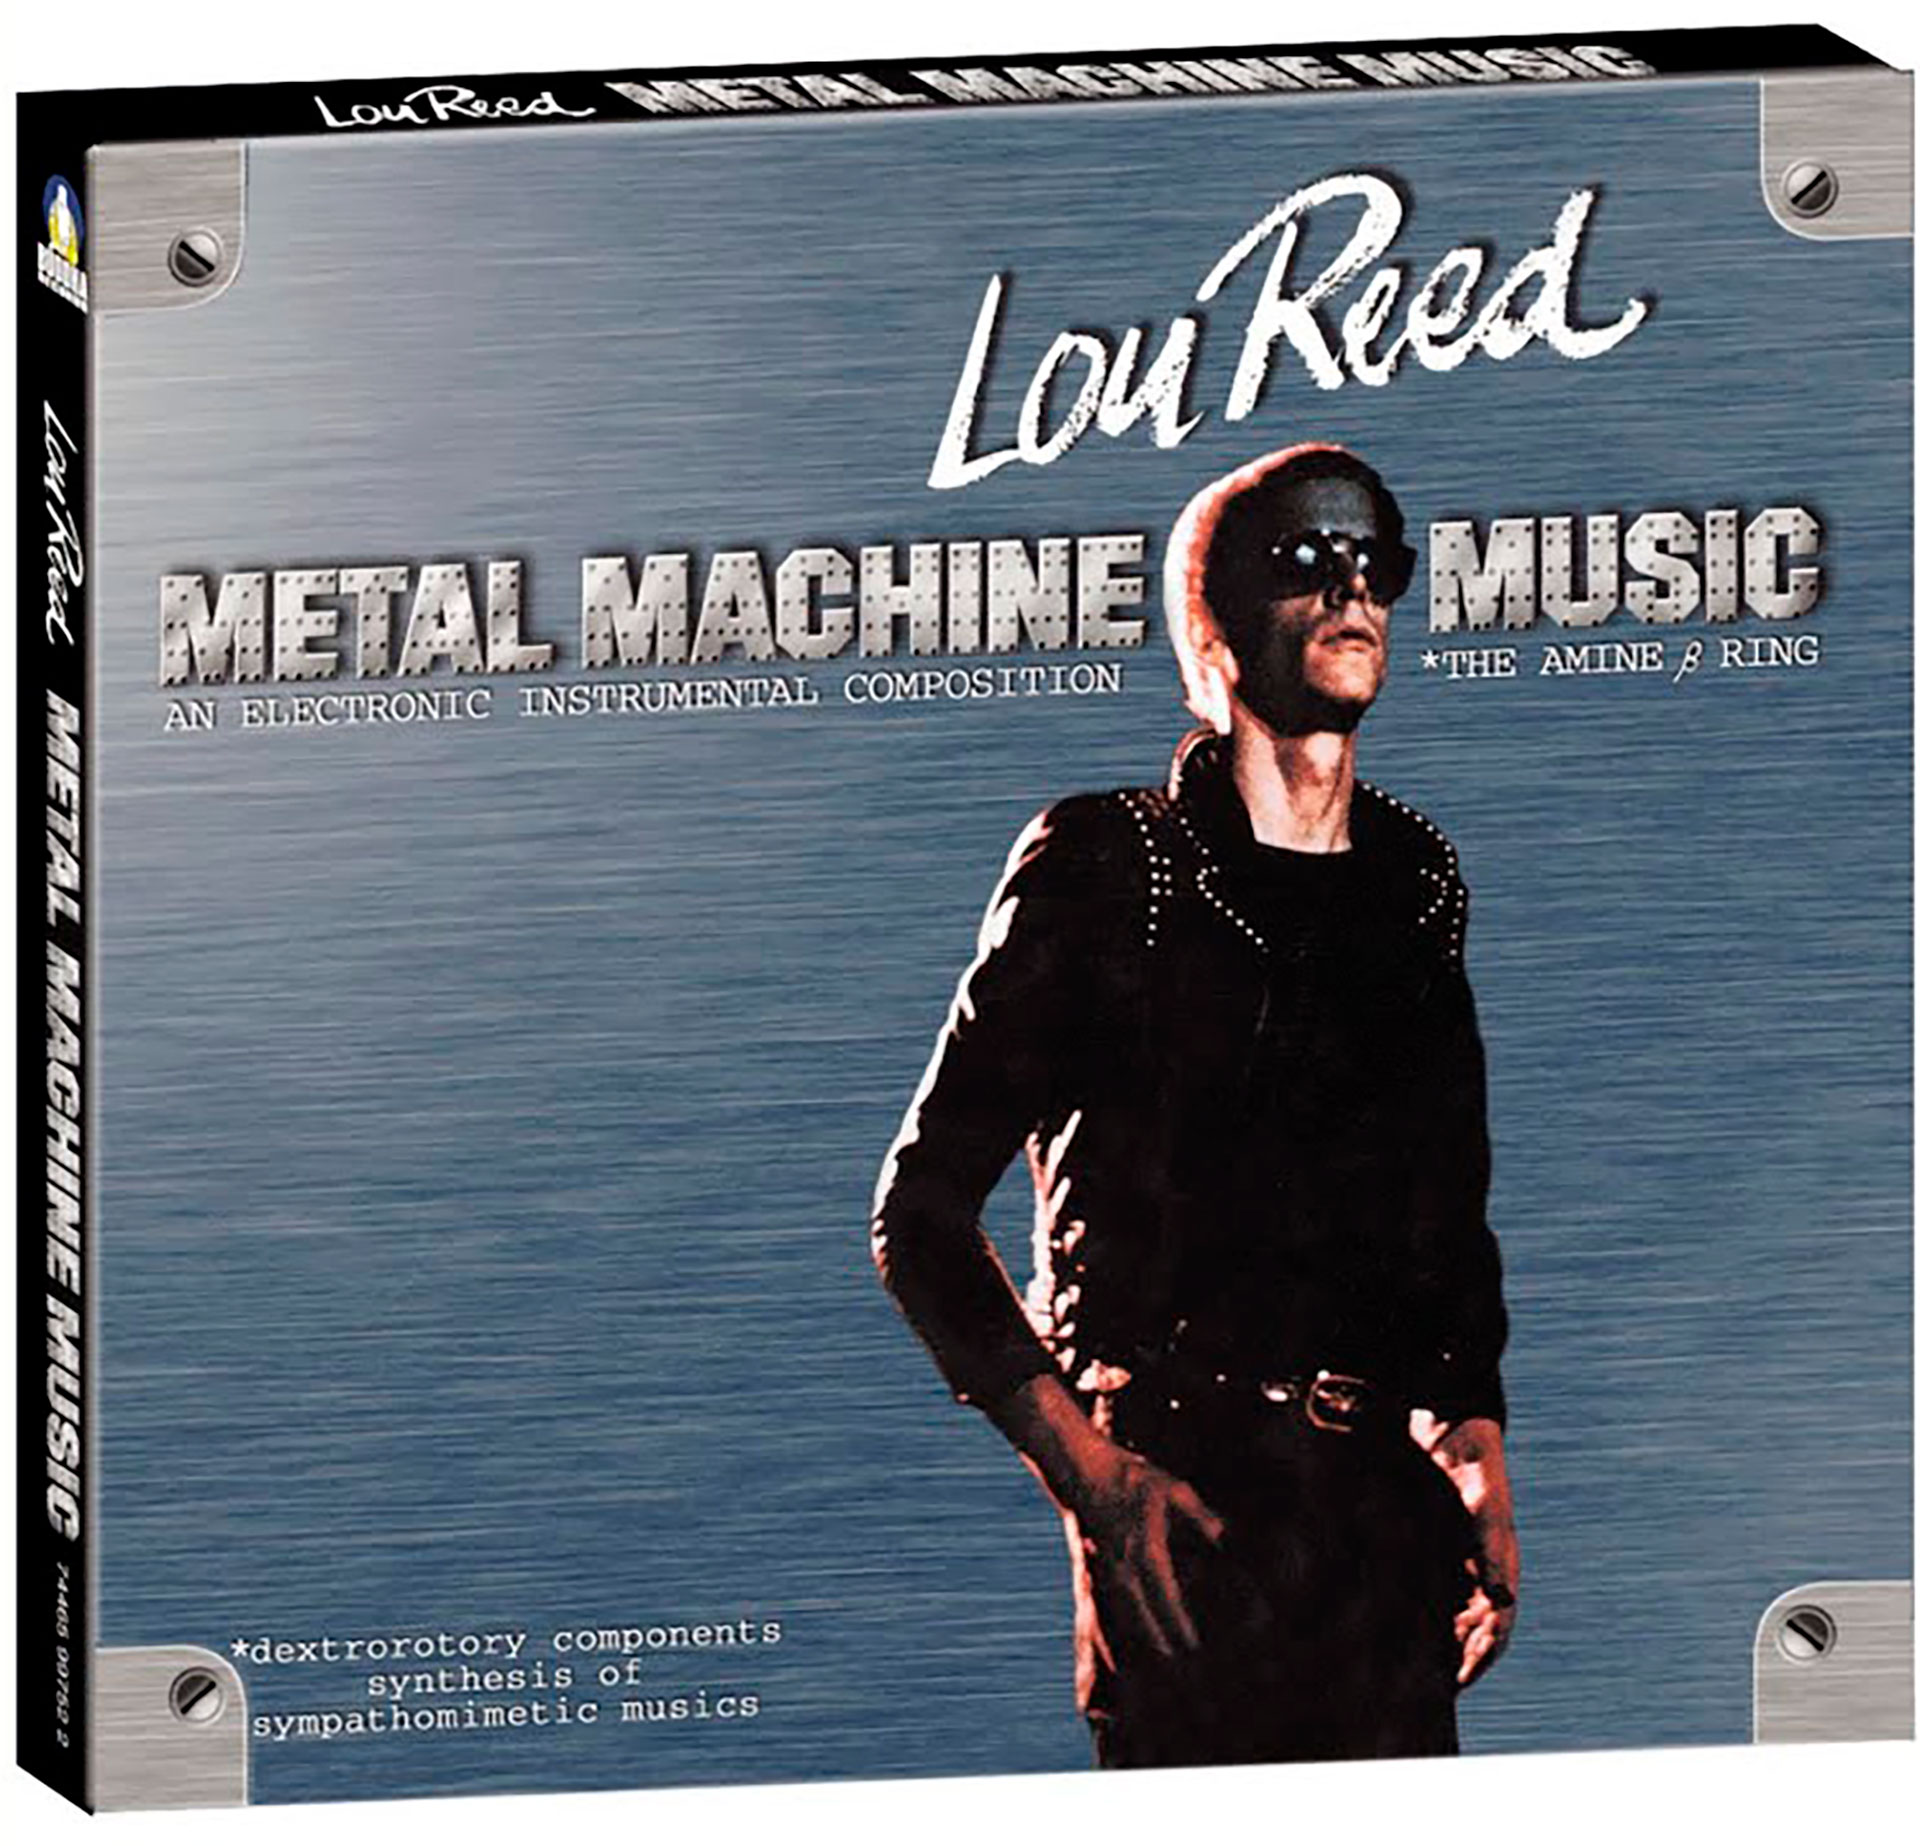 Metal Machine Music, uno de los discos más controvertidos de Lou Reed. Tanto es así que el propio músico dijo que nunca lo pudo escuchar completo